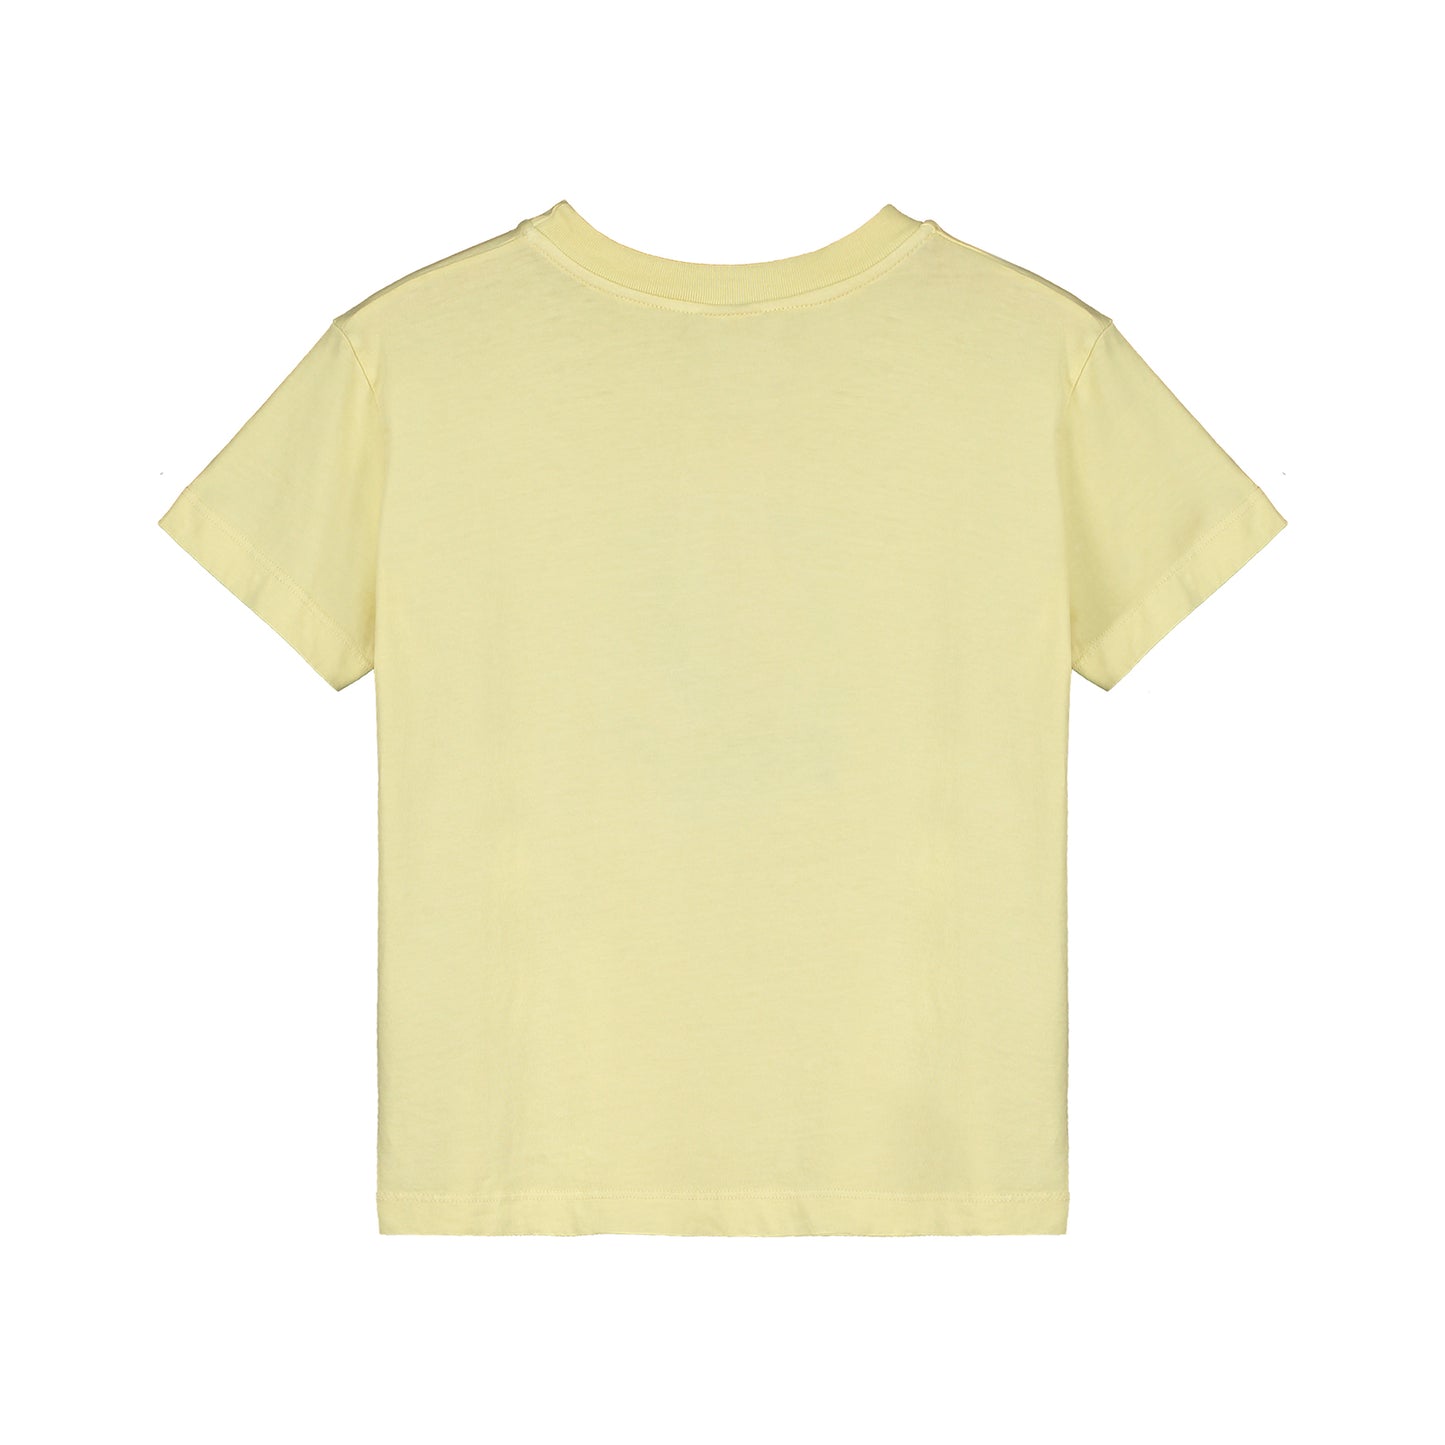 Camiseta amarilla Sea- BONMOT